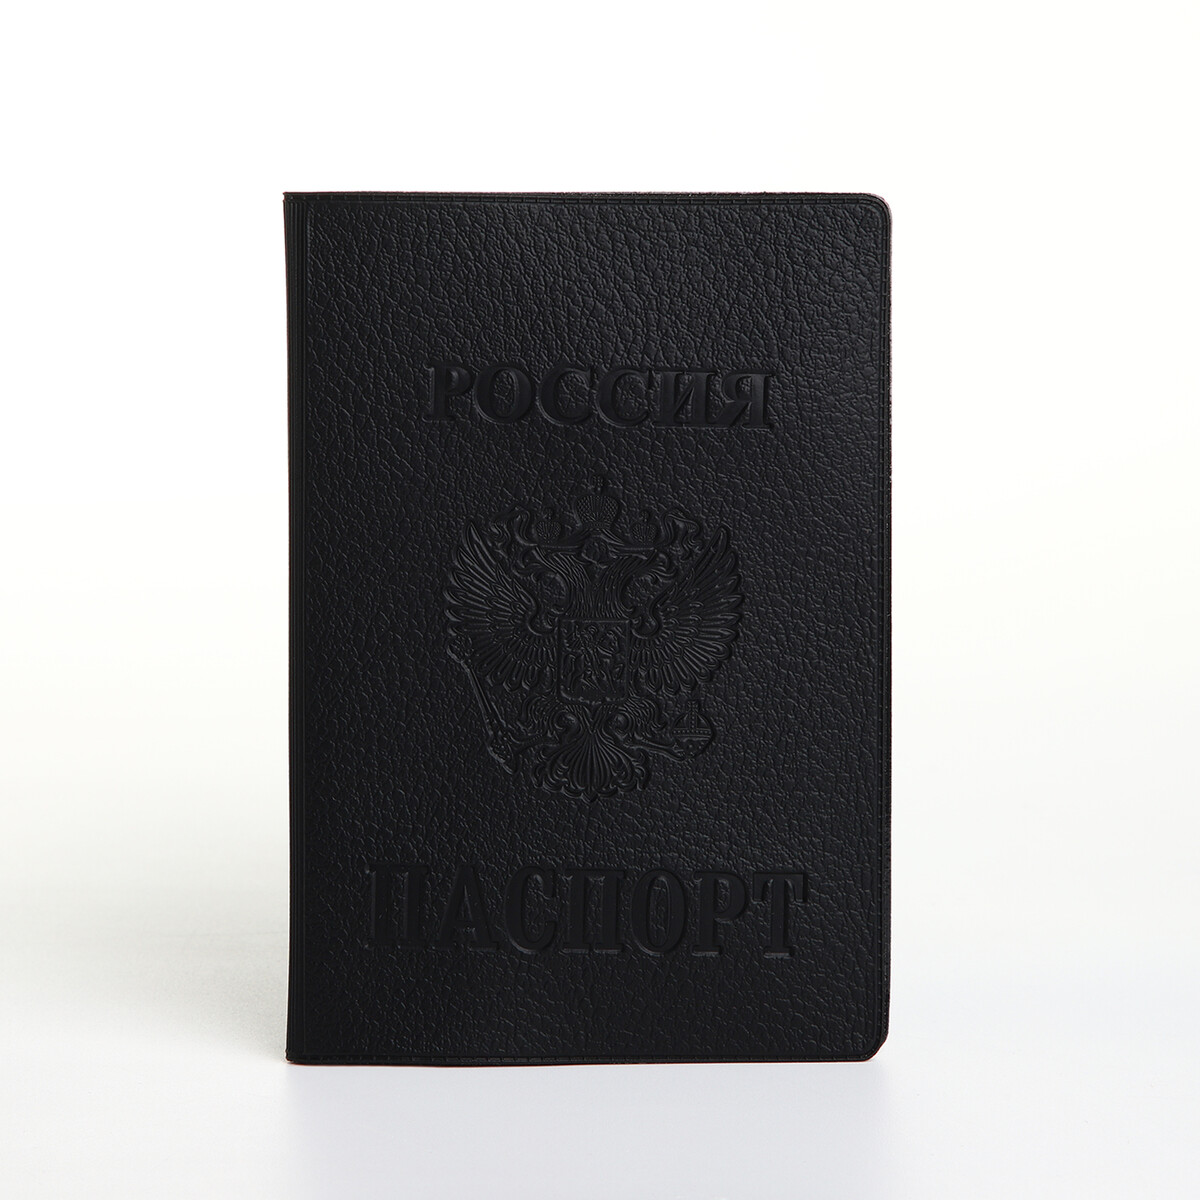 Обложка для паспорта, герб, 9,5*0,5*13,5 см, конгрев, винилл 1799 черный No brand